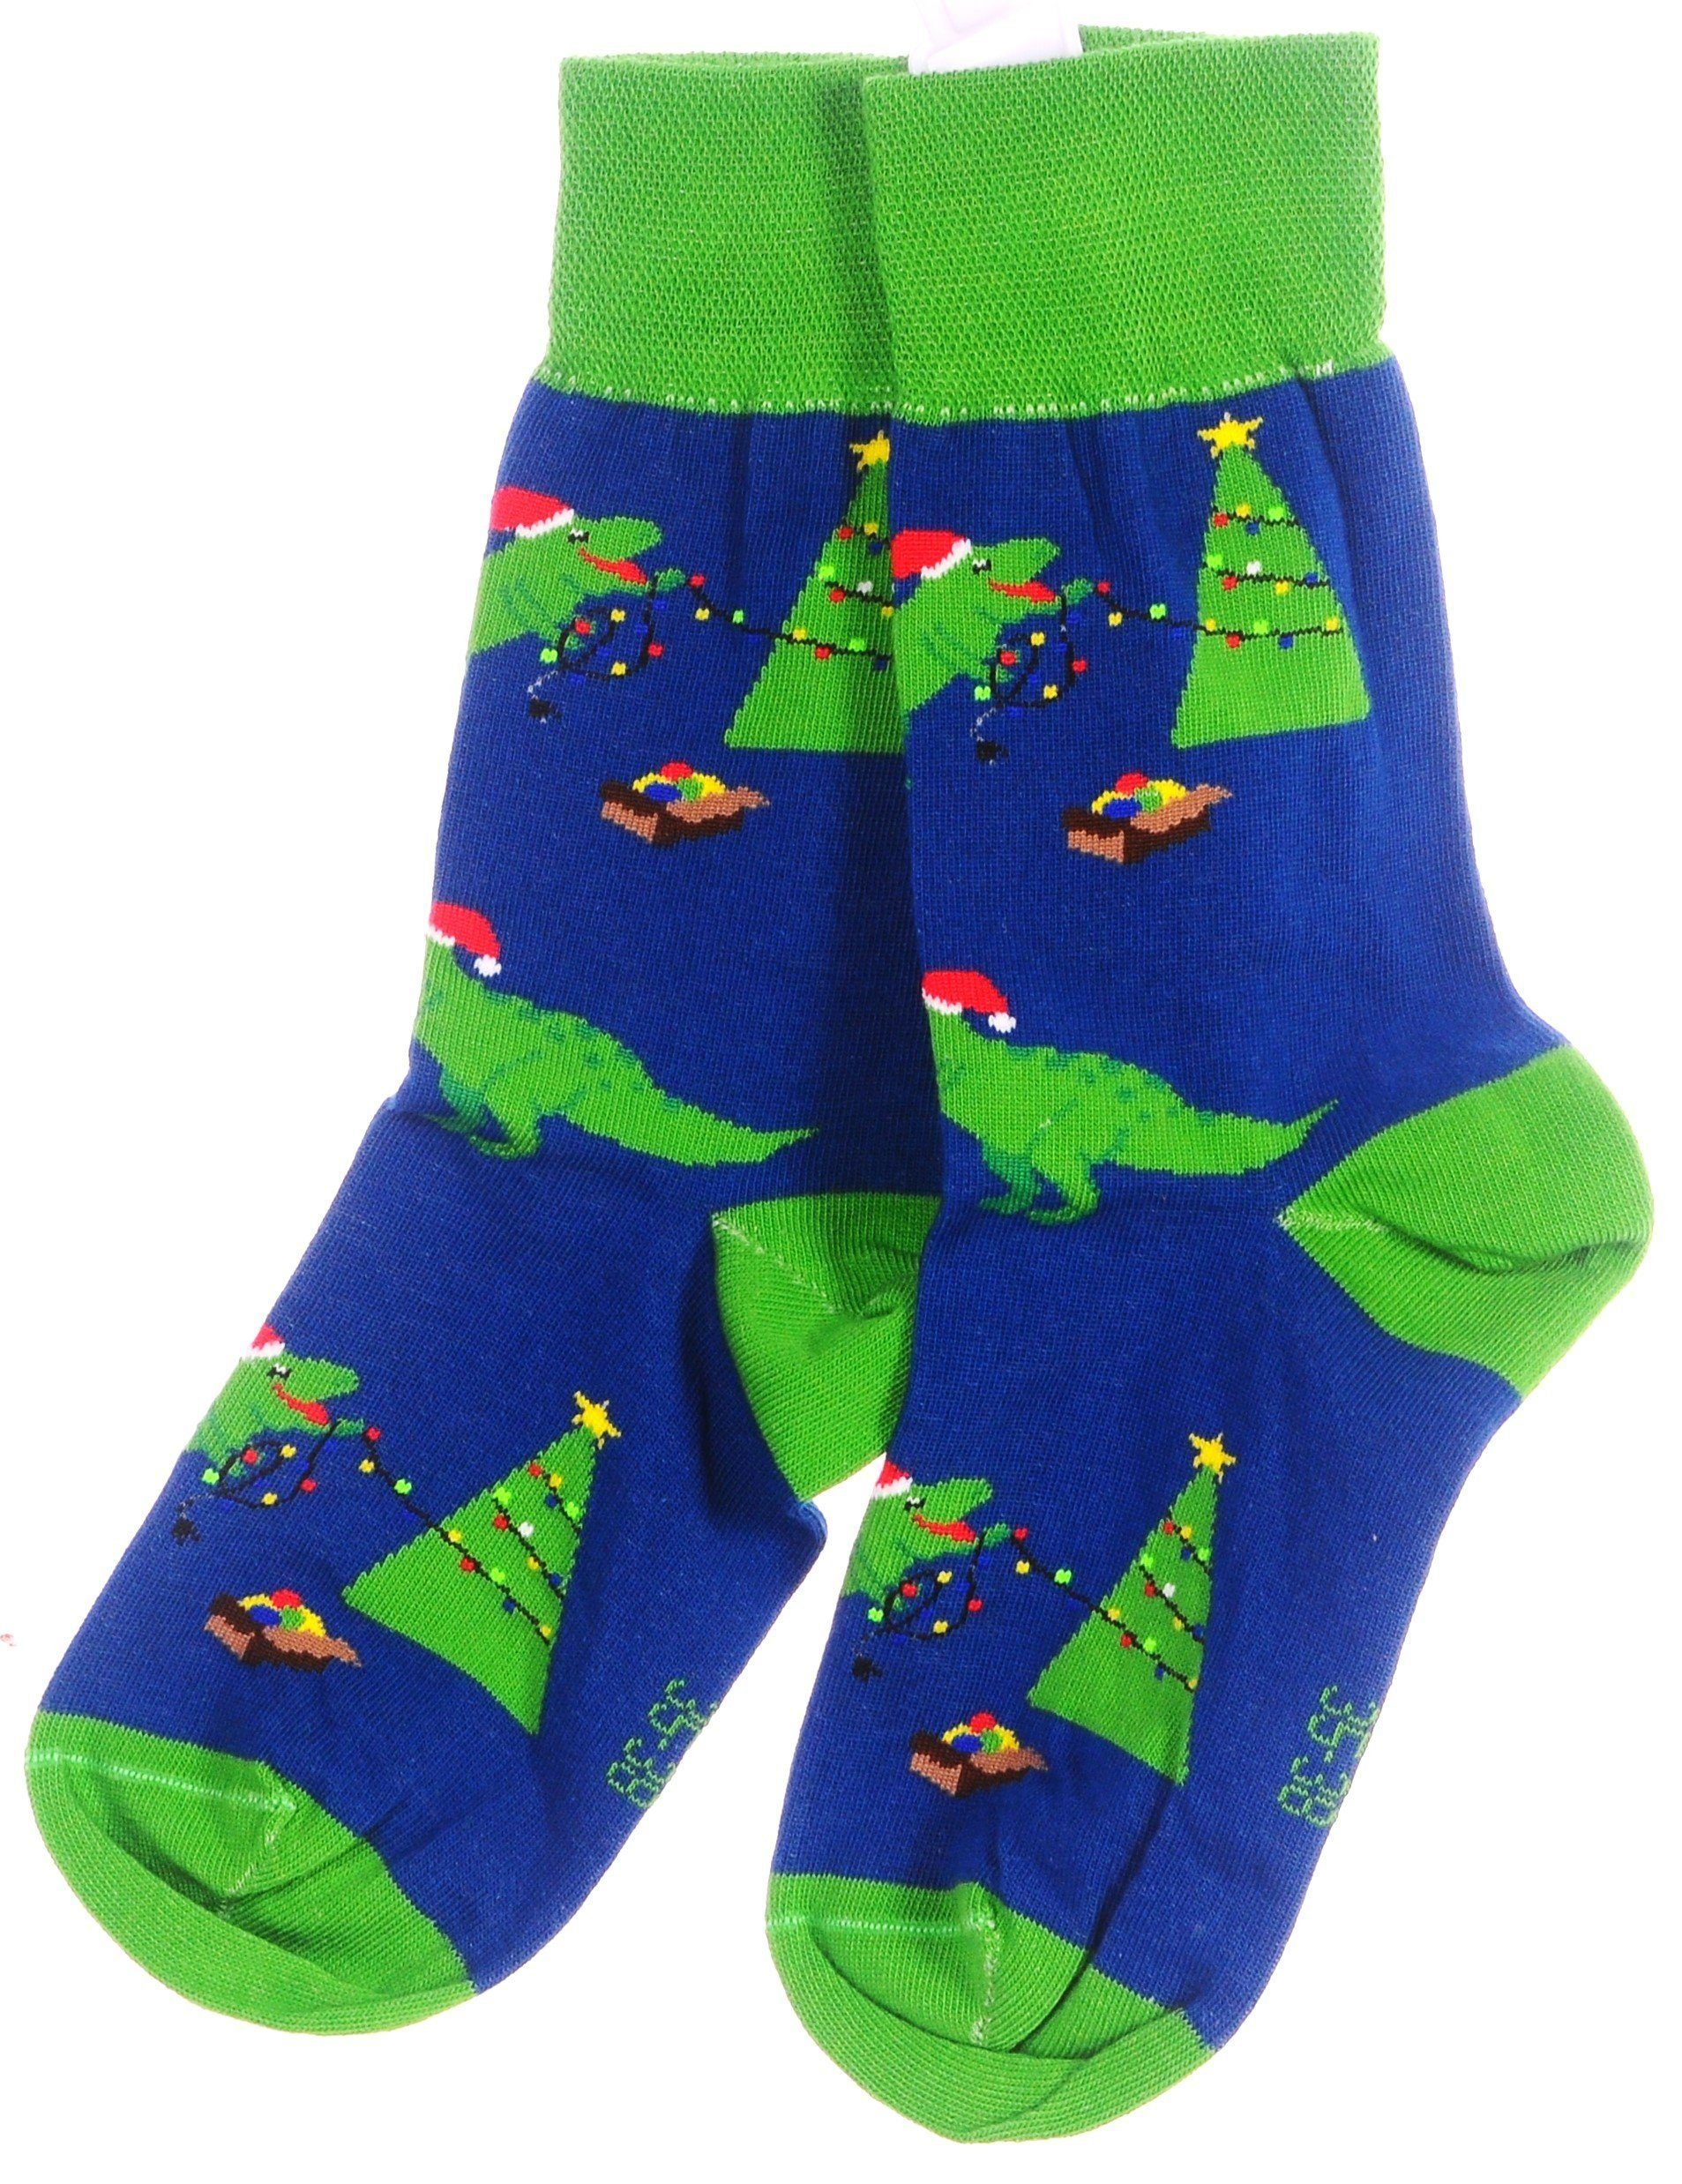 Martinex Socken weihnachtlich bunt, Socken schön, Weihnachtssocken Strümpfe Blau_Tanne 38 42 39 35 46 Paar 43 1